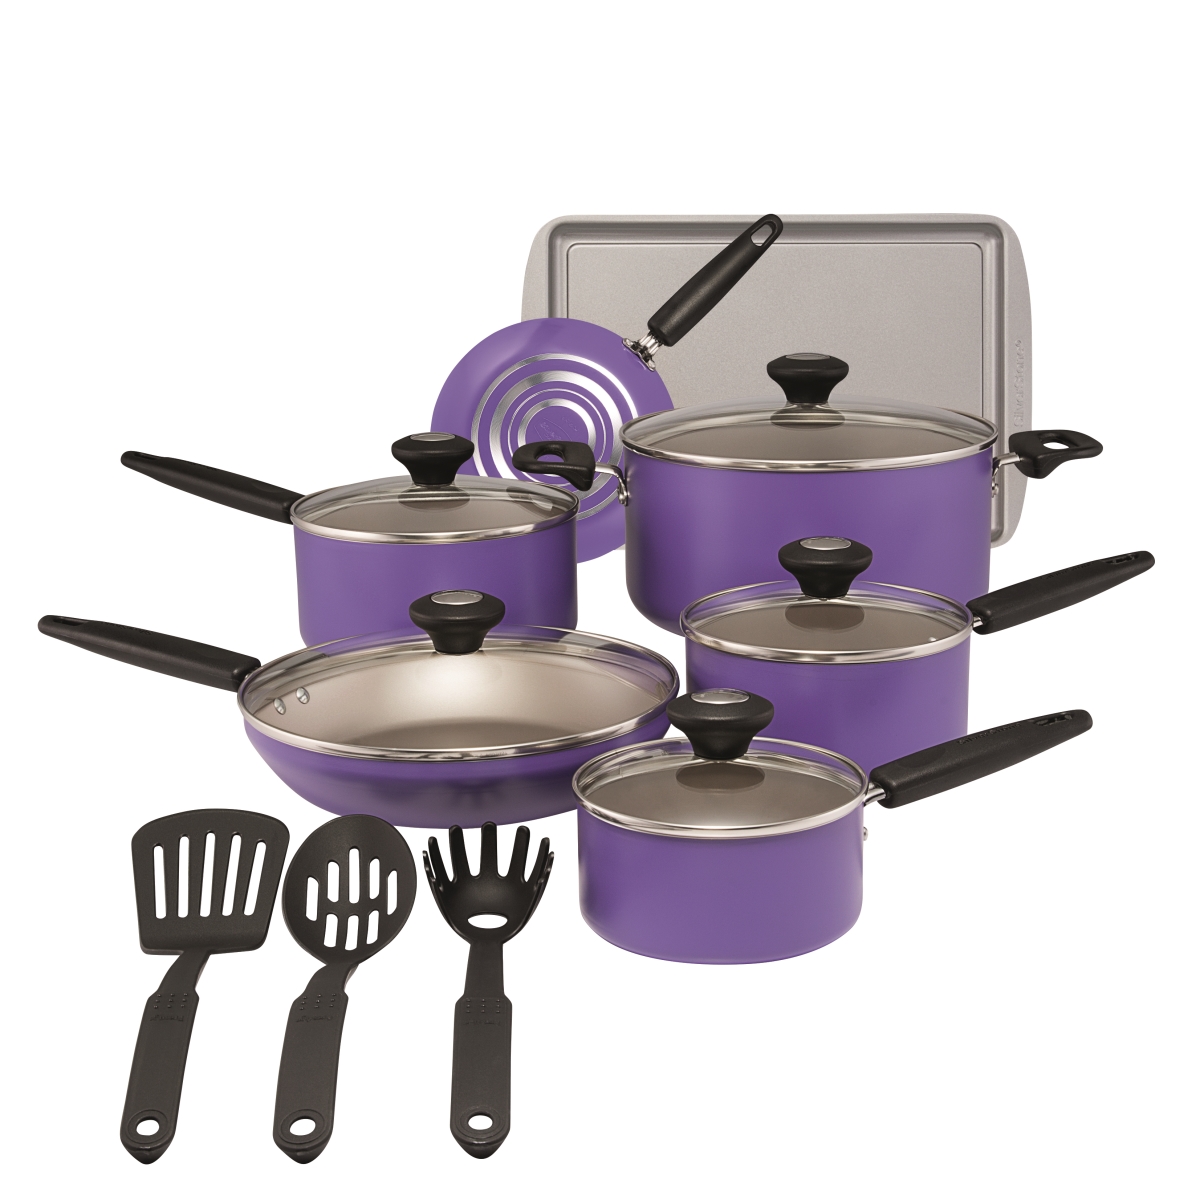 22037 Culinary Colors Aluminum Nonstick Cookware Set, Purple - 15 Piece